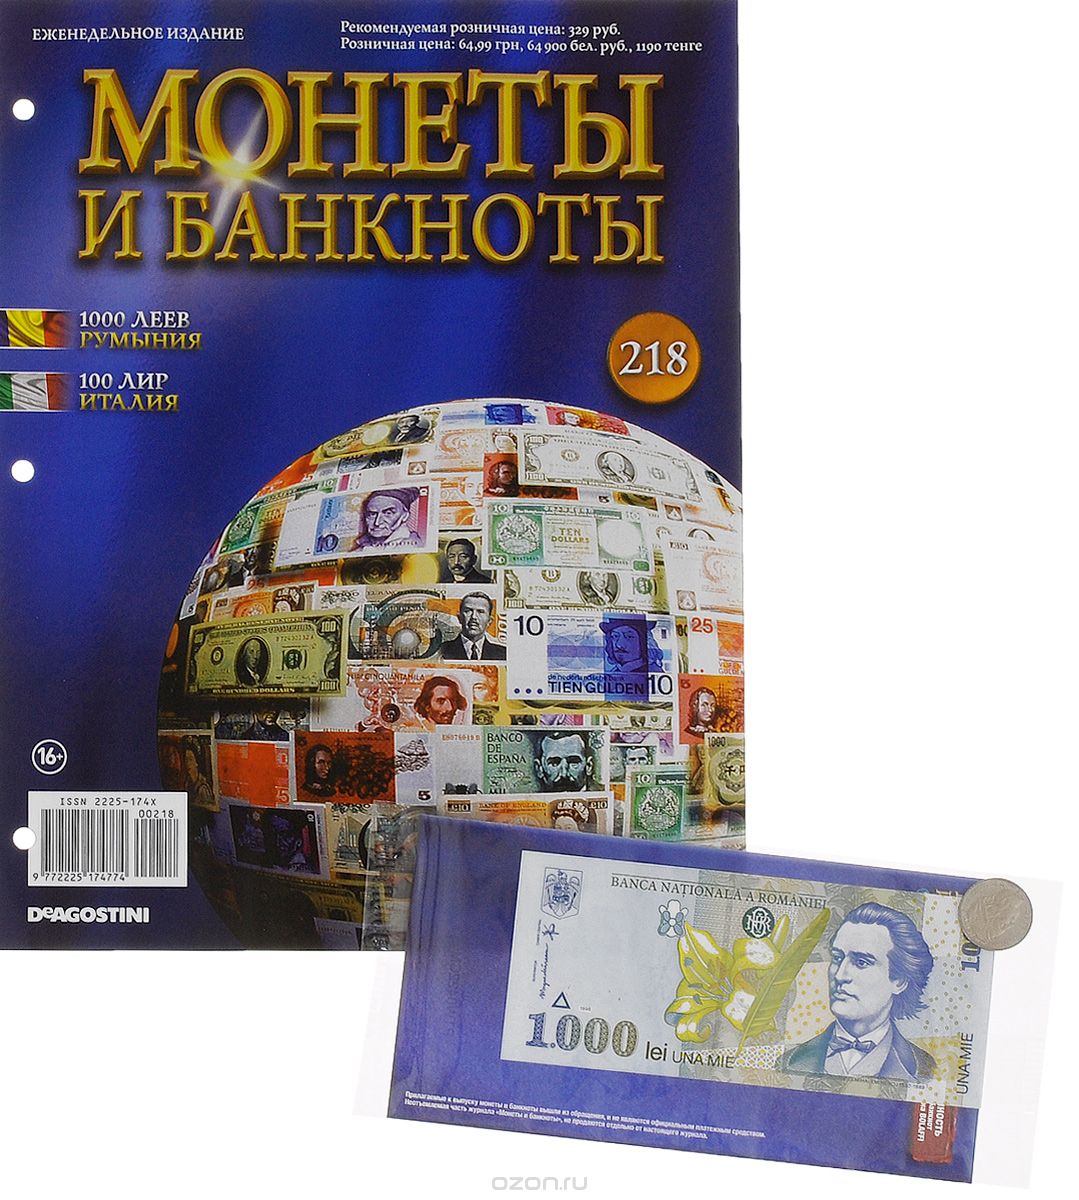 Скачать книгу "Журнал "Монеты и банкноты" №218"